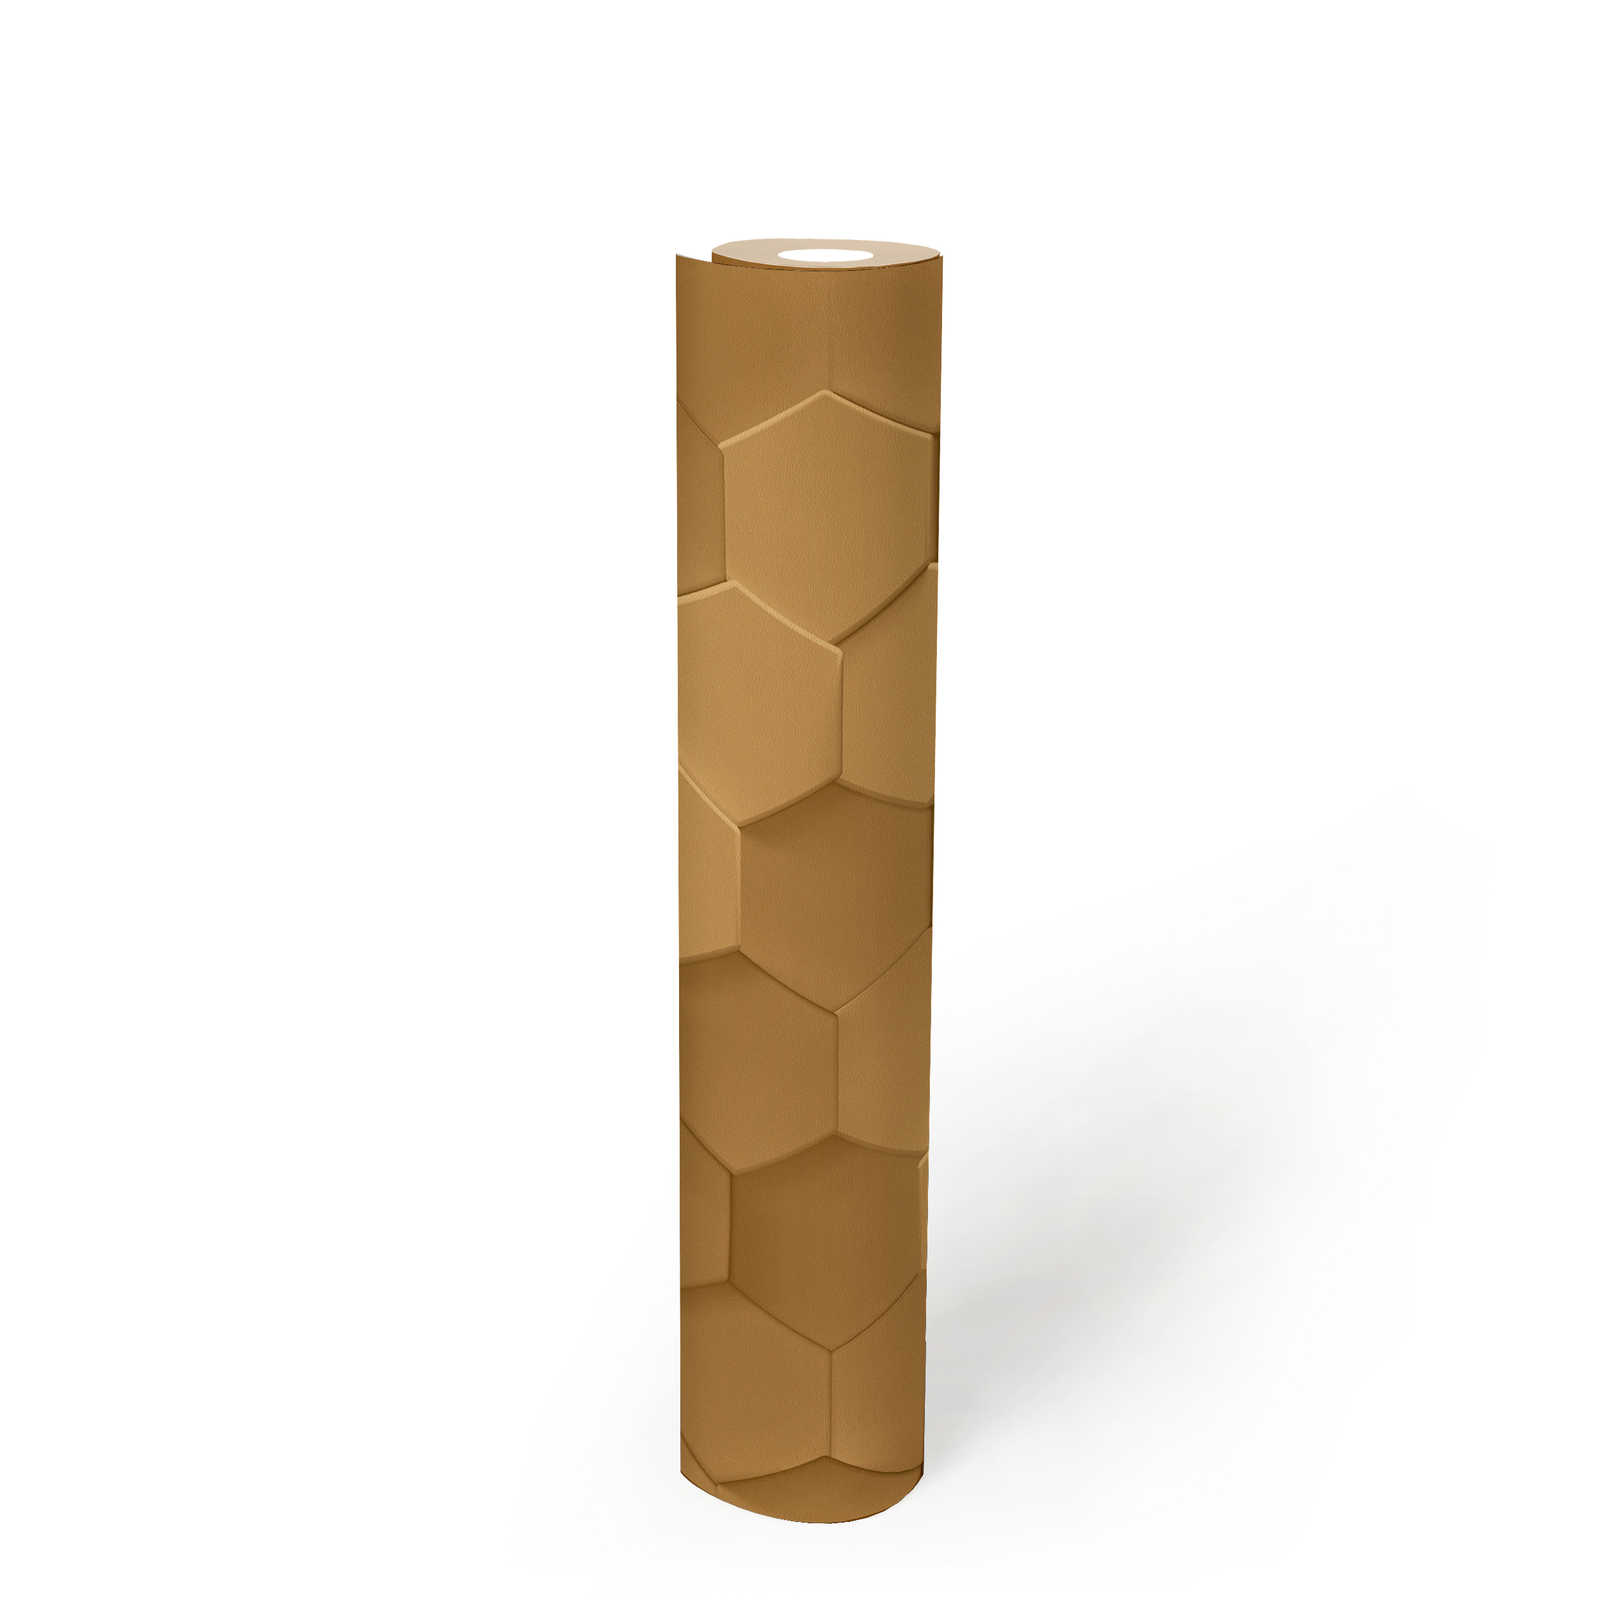             Hexagon 3D wallpaper graphic pattern honeycomb - beige
        